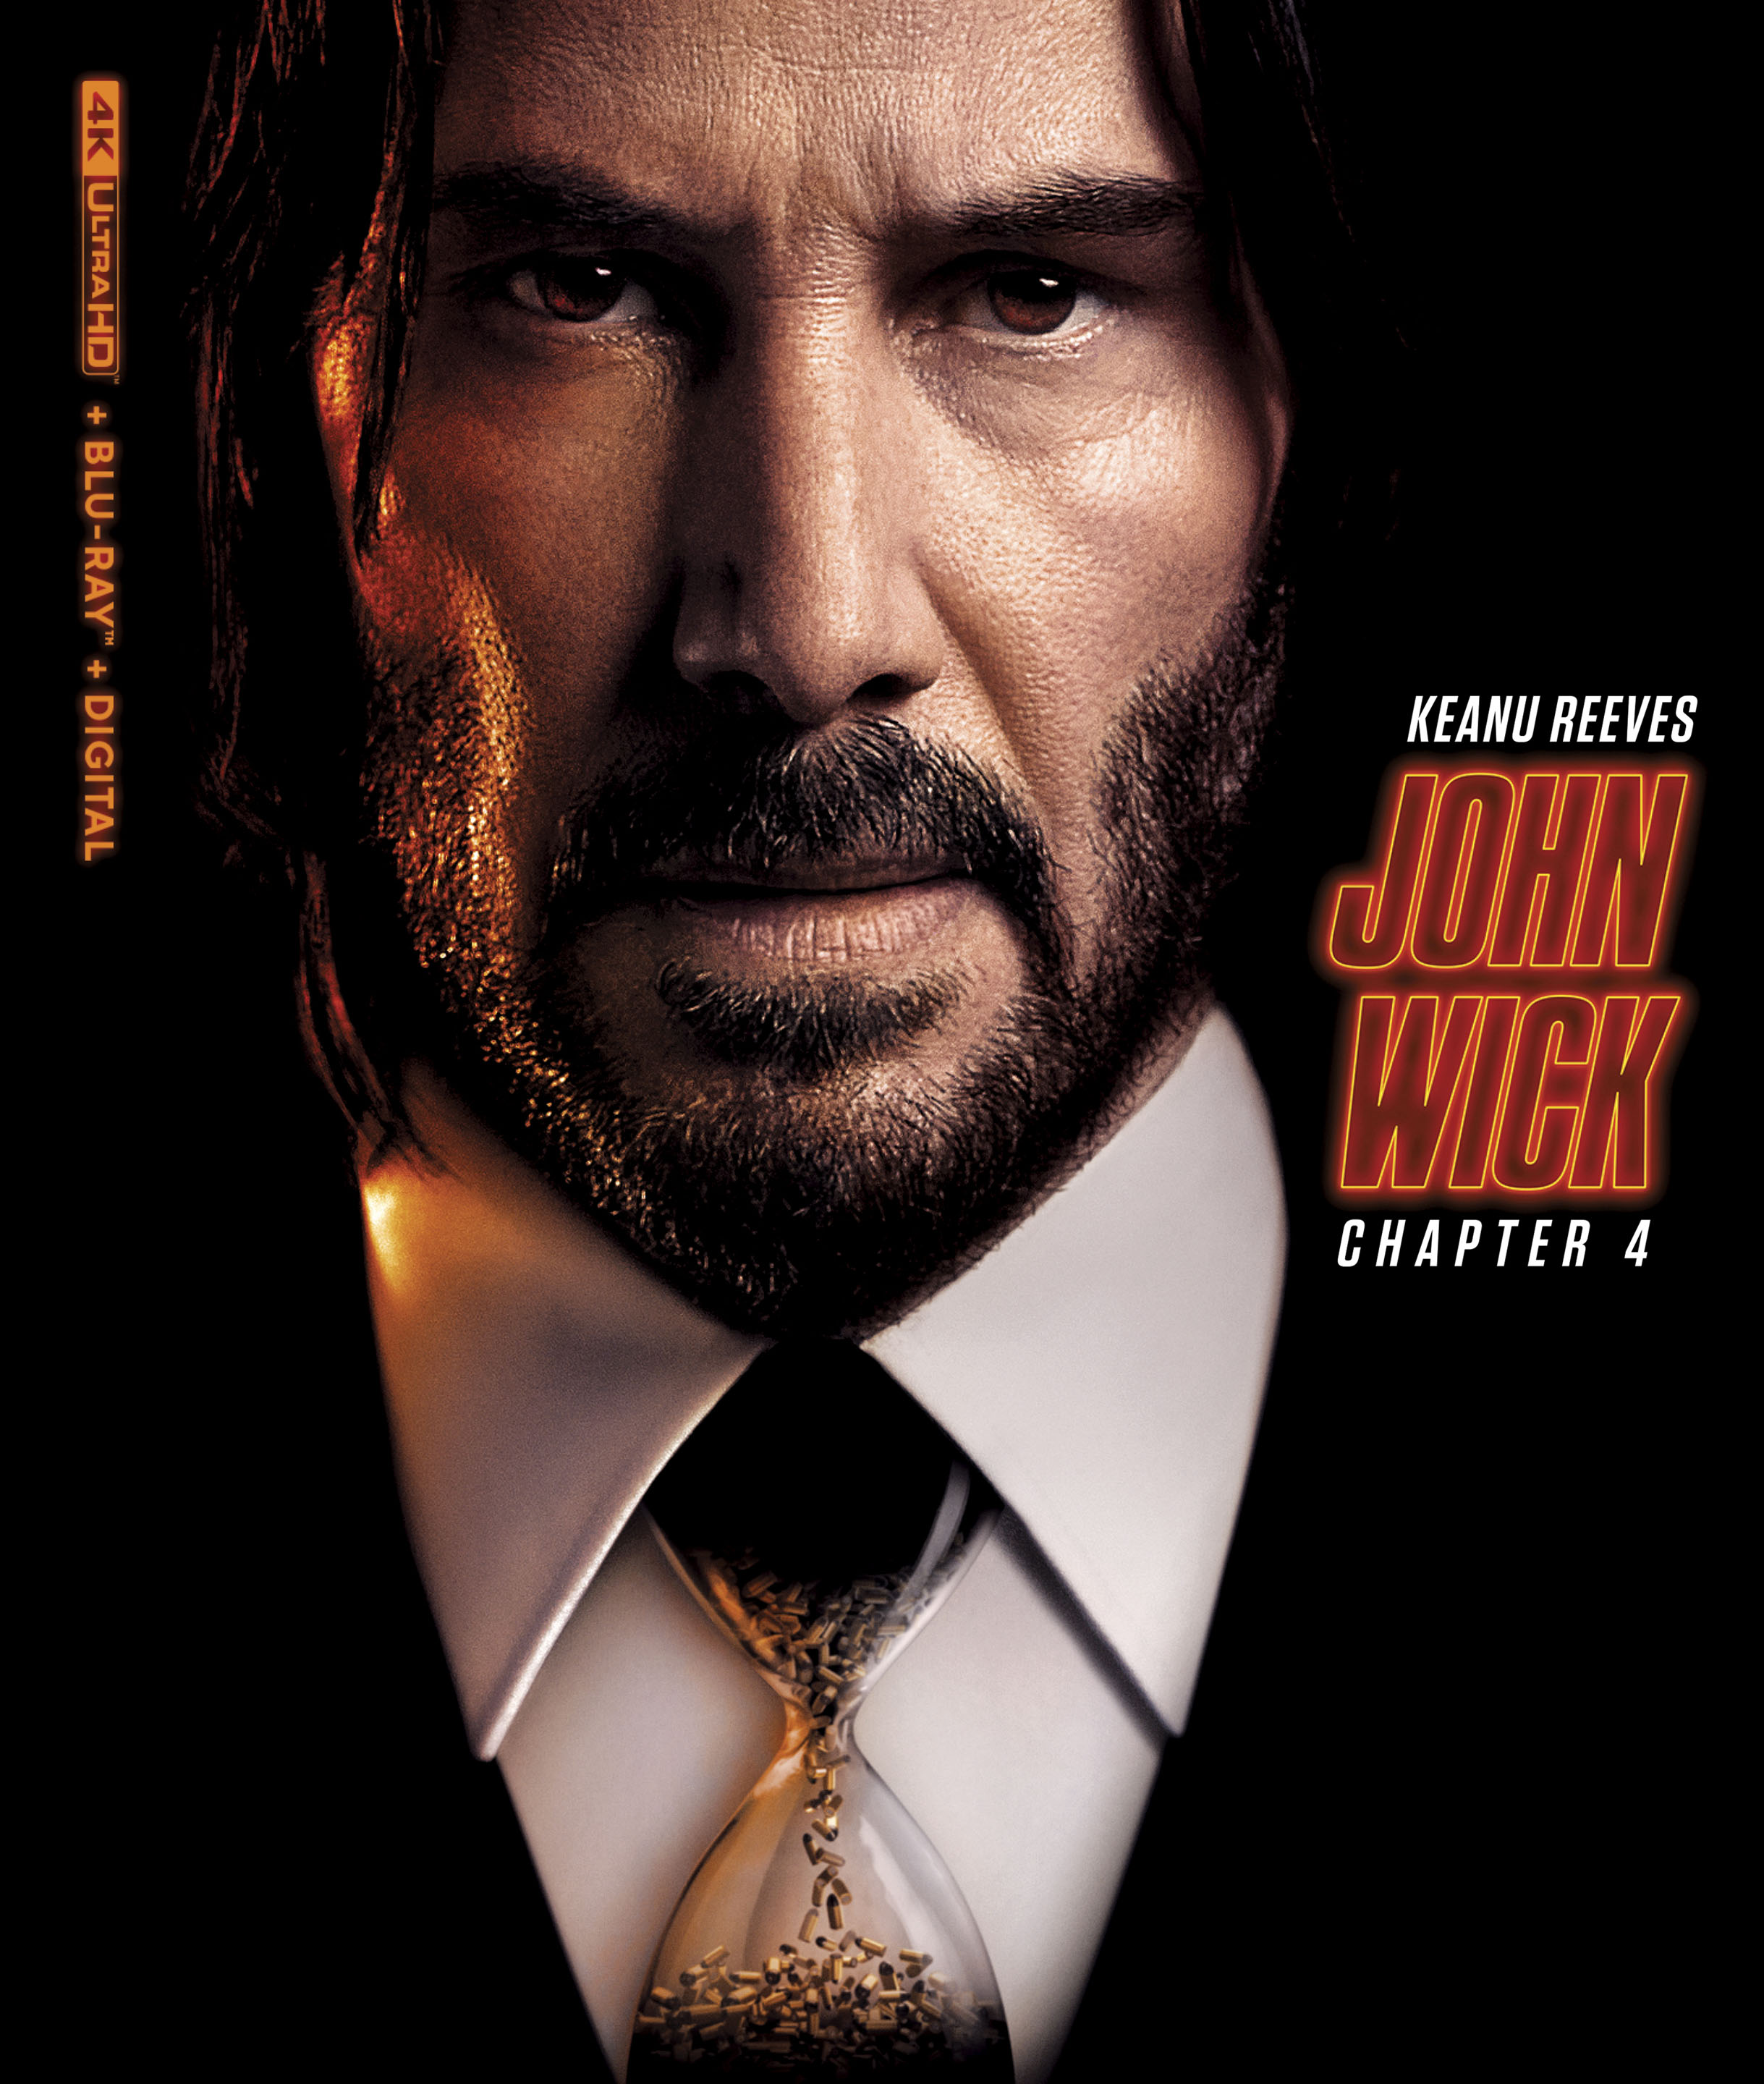 John Wick: Chapter 4 [Includes Digital Copy] [4K Ultra HD Blu-ray/Blu-ray]  [2023] - Best Buy